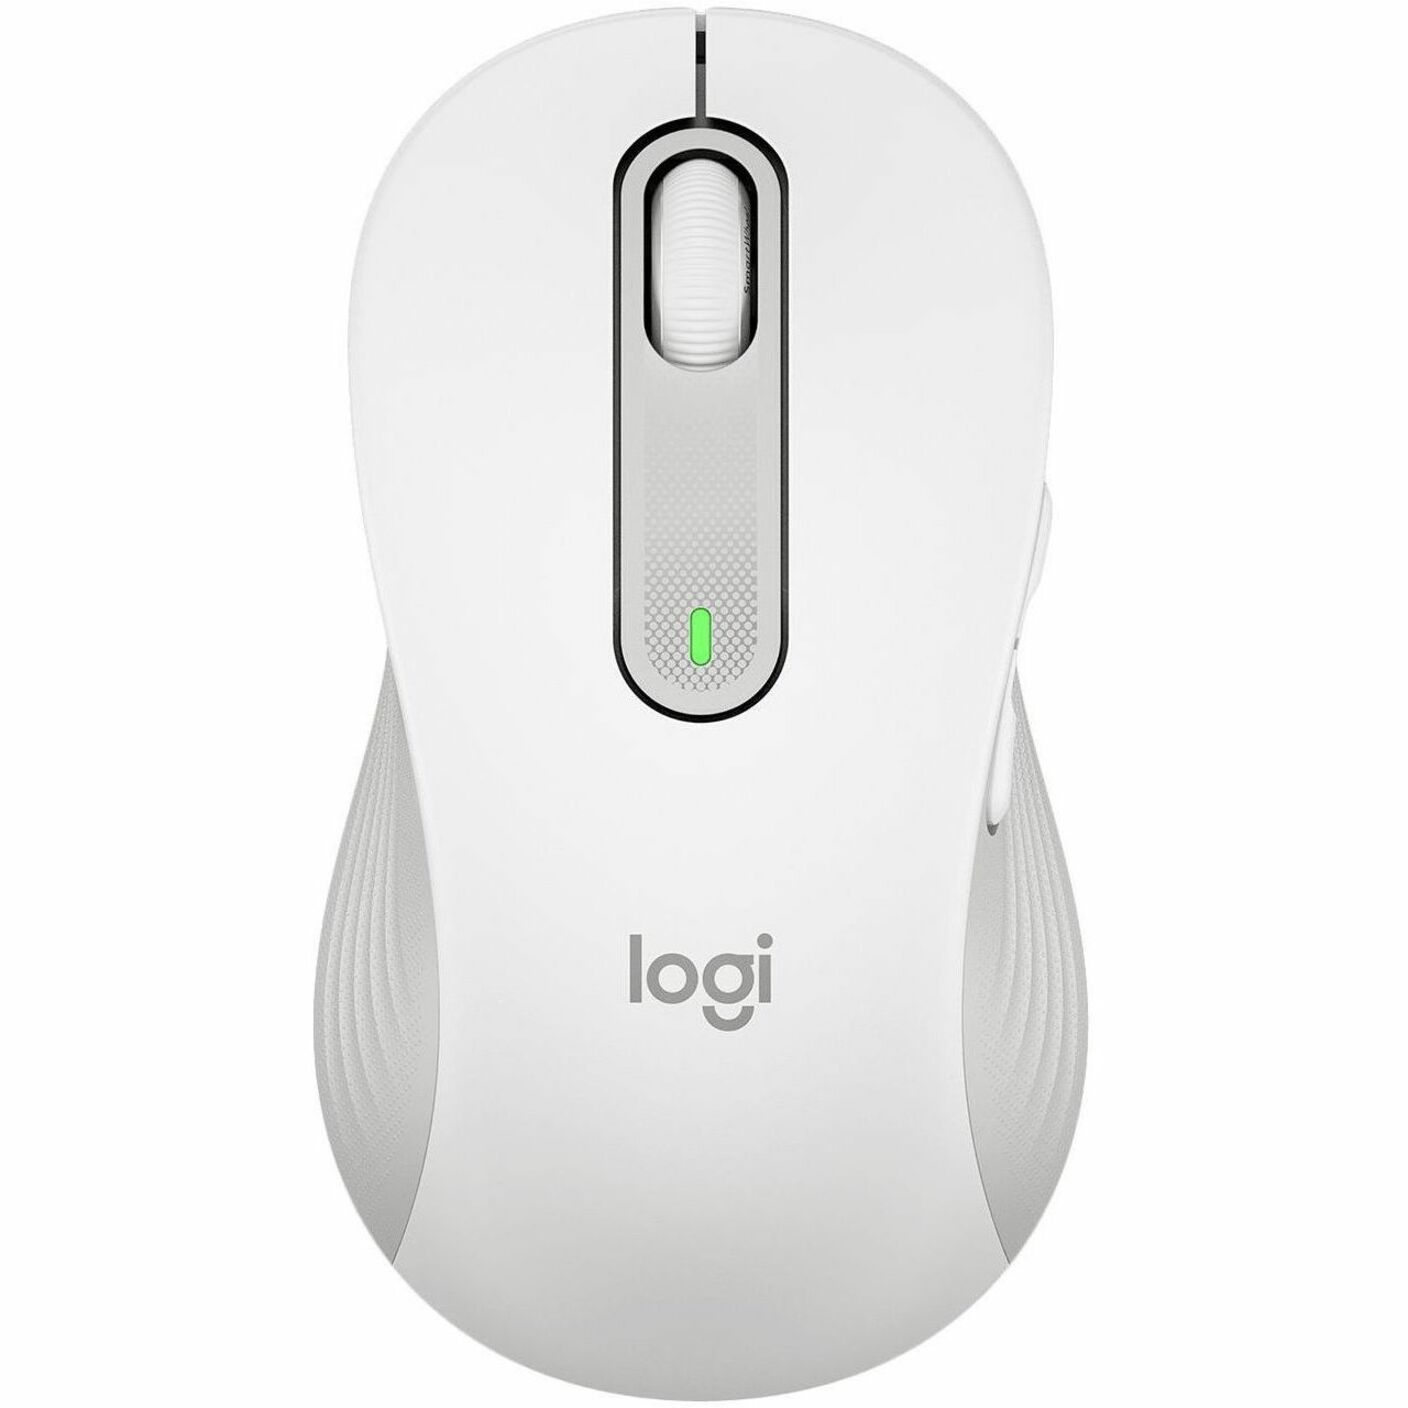 Logitech Signature M650 Mouse (910-006235)